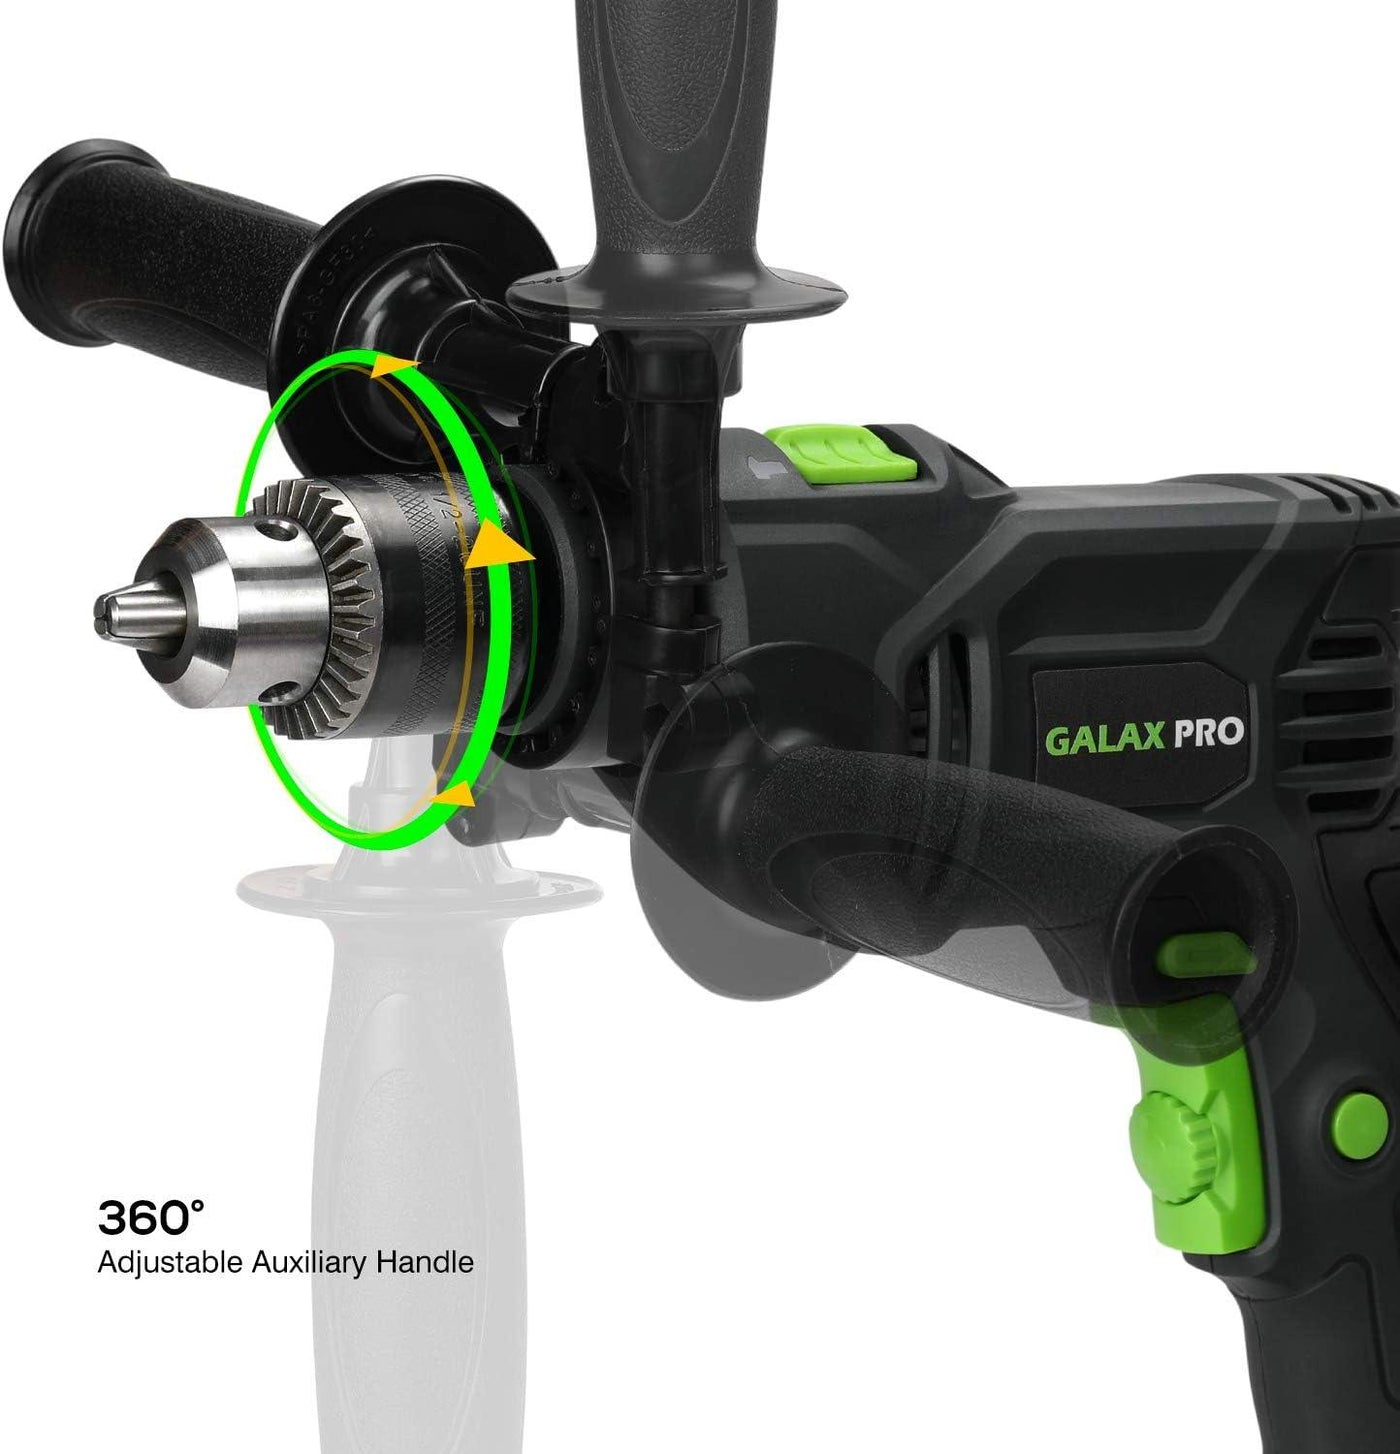 GALAX PRO Hammer Drill, 600W Electic Corded Drill - Massive Discounts